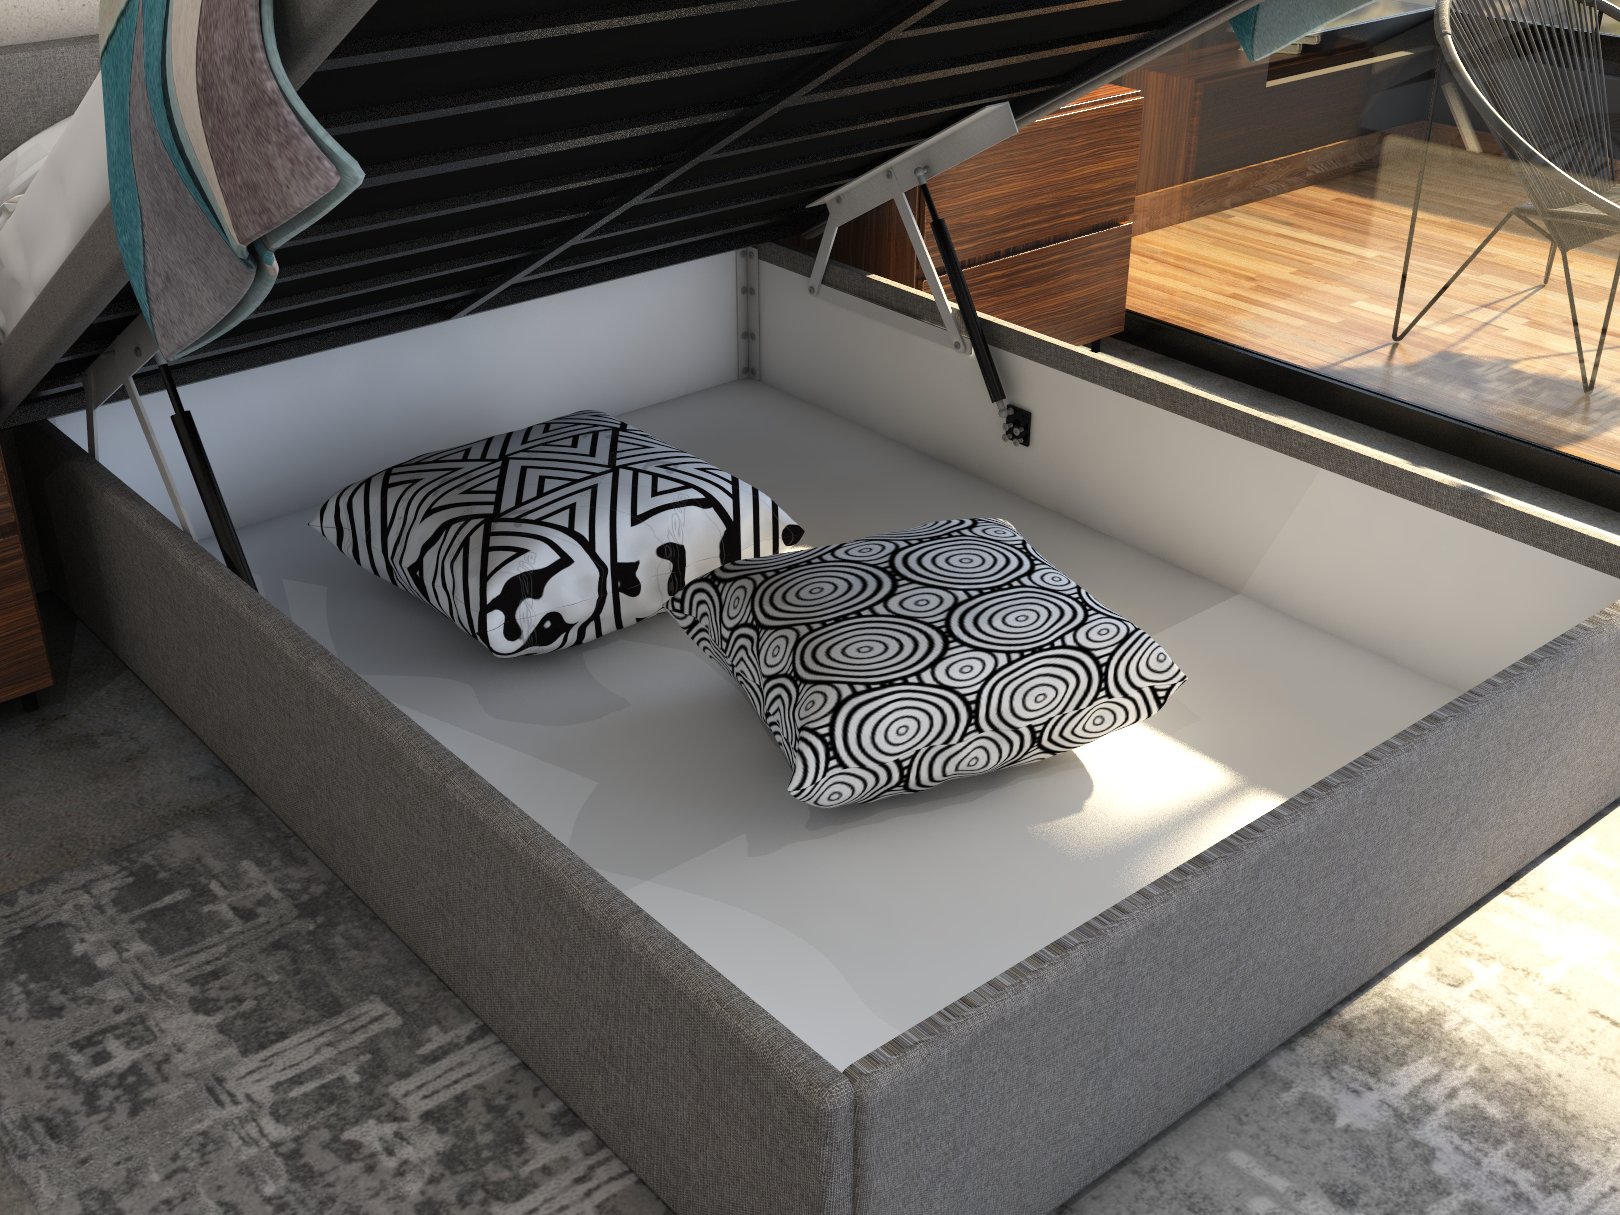 Cunert base de cama matrimonial con laminado de madera color concreto // MS